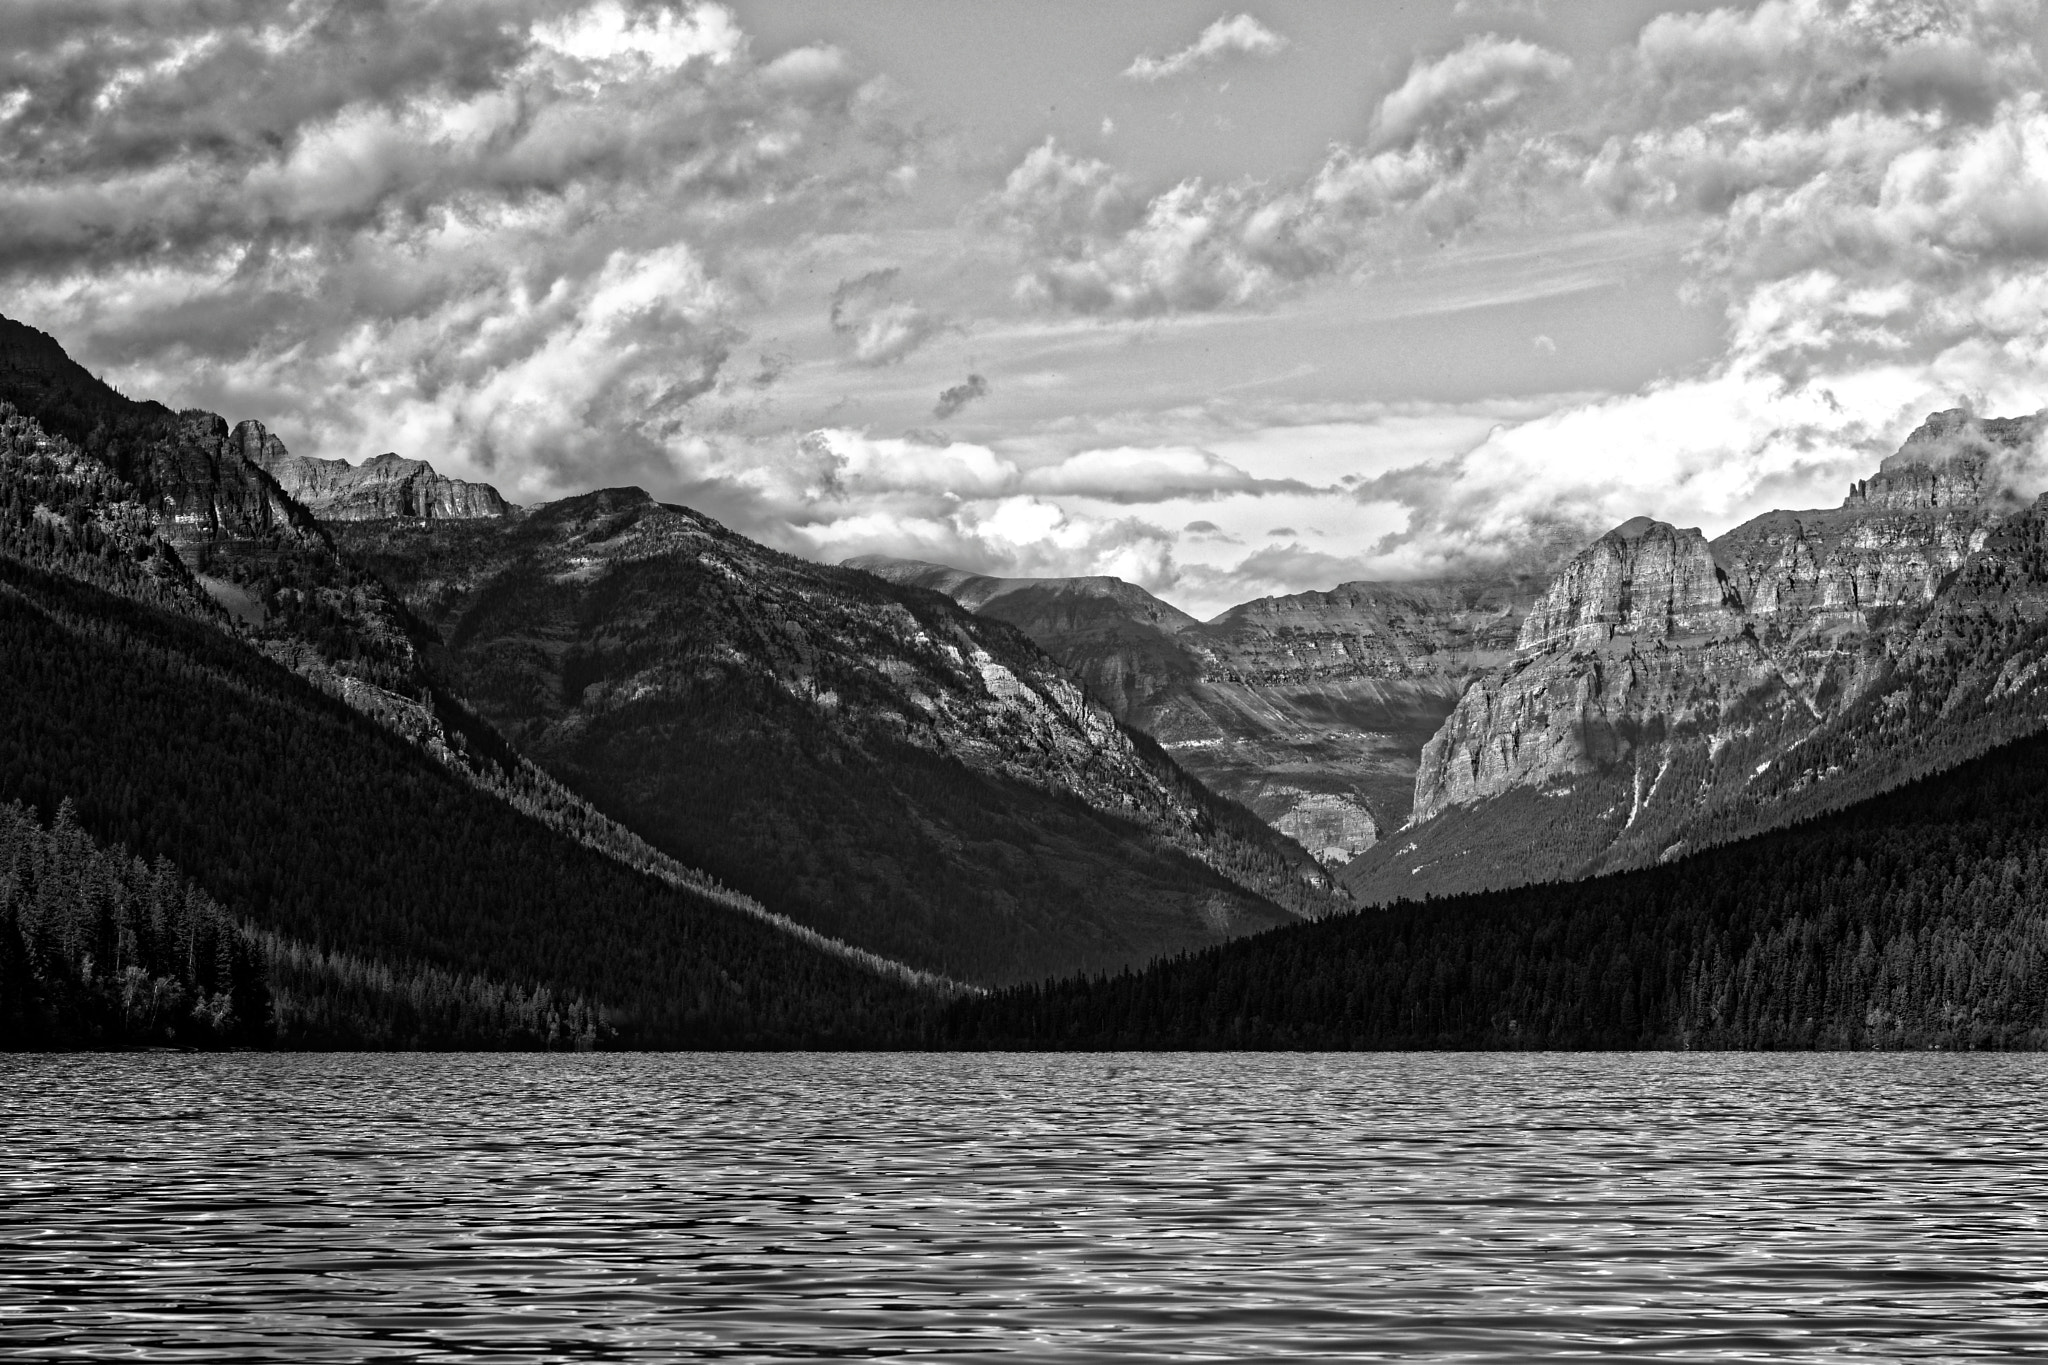 Nikon D500 + Tamron SP 70-200mm F2.8 Di VC USD sample photo. Bowman lake - gnp landscape b/w photography